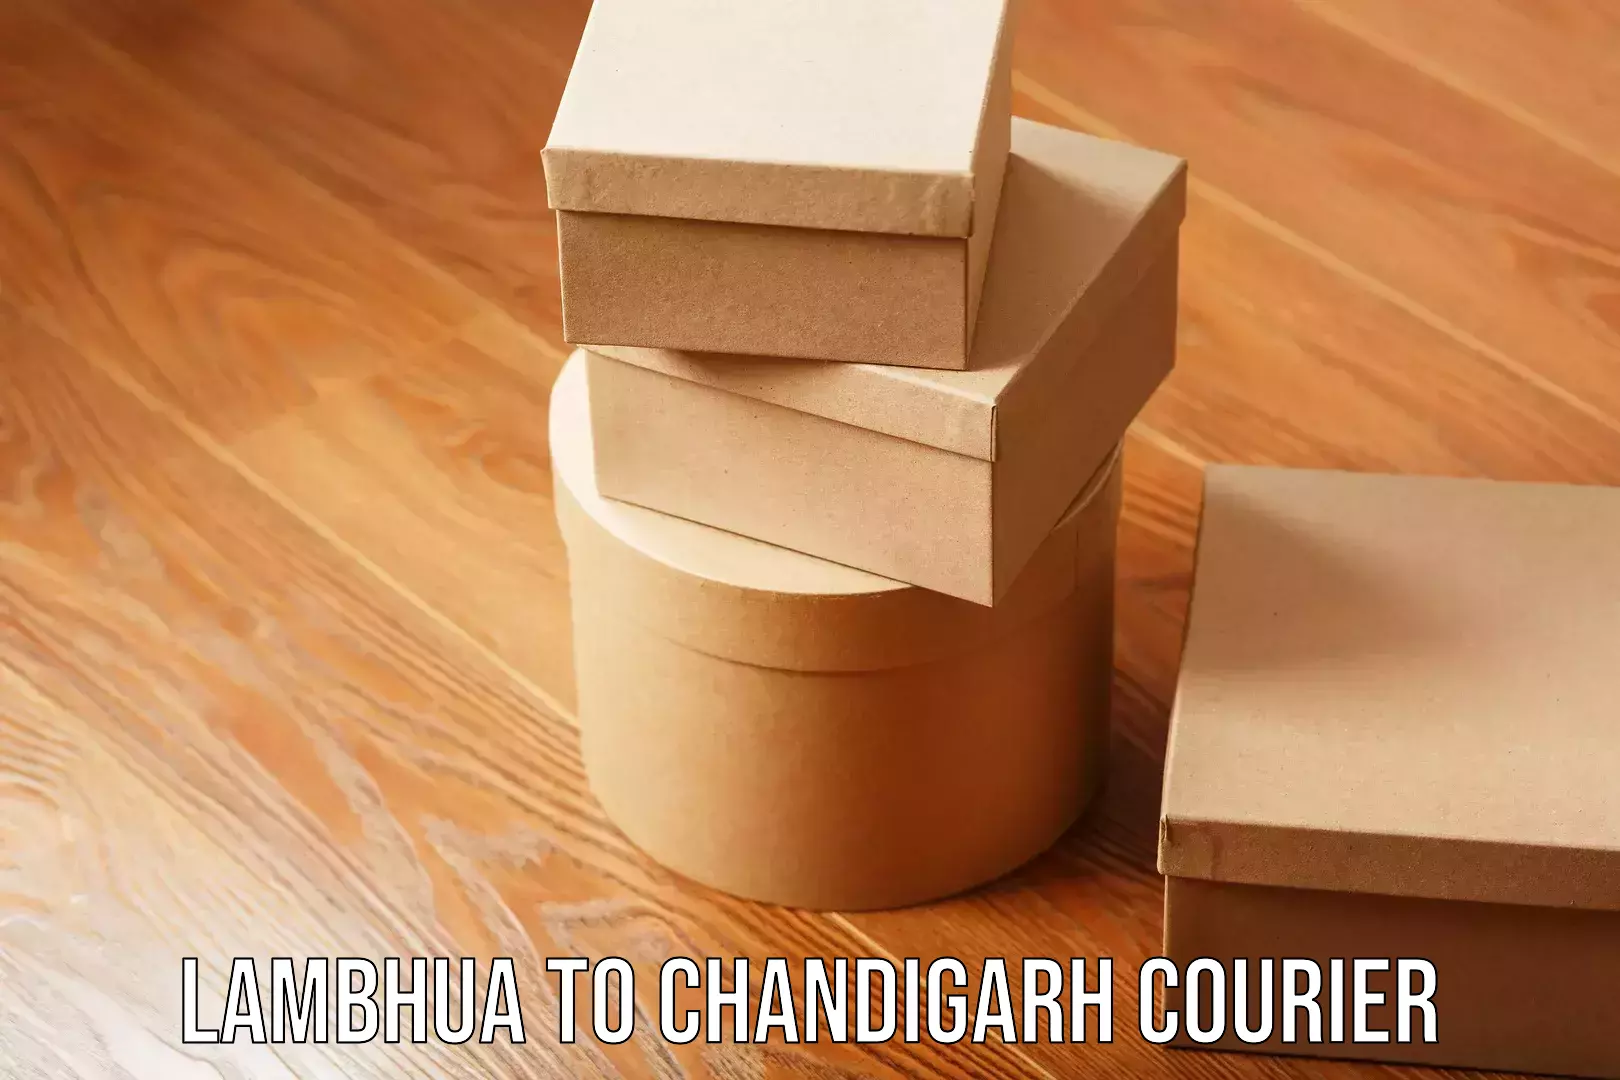 Furniture transport professionals Lambhua to Chandigarh